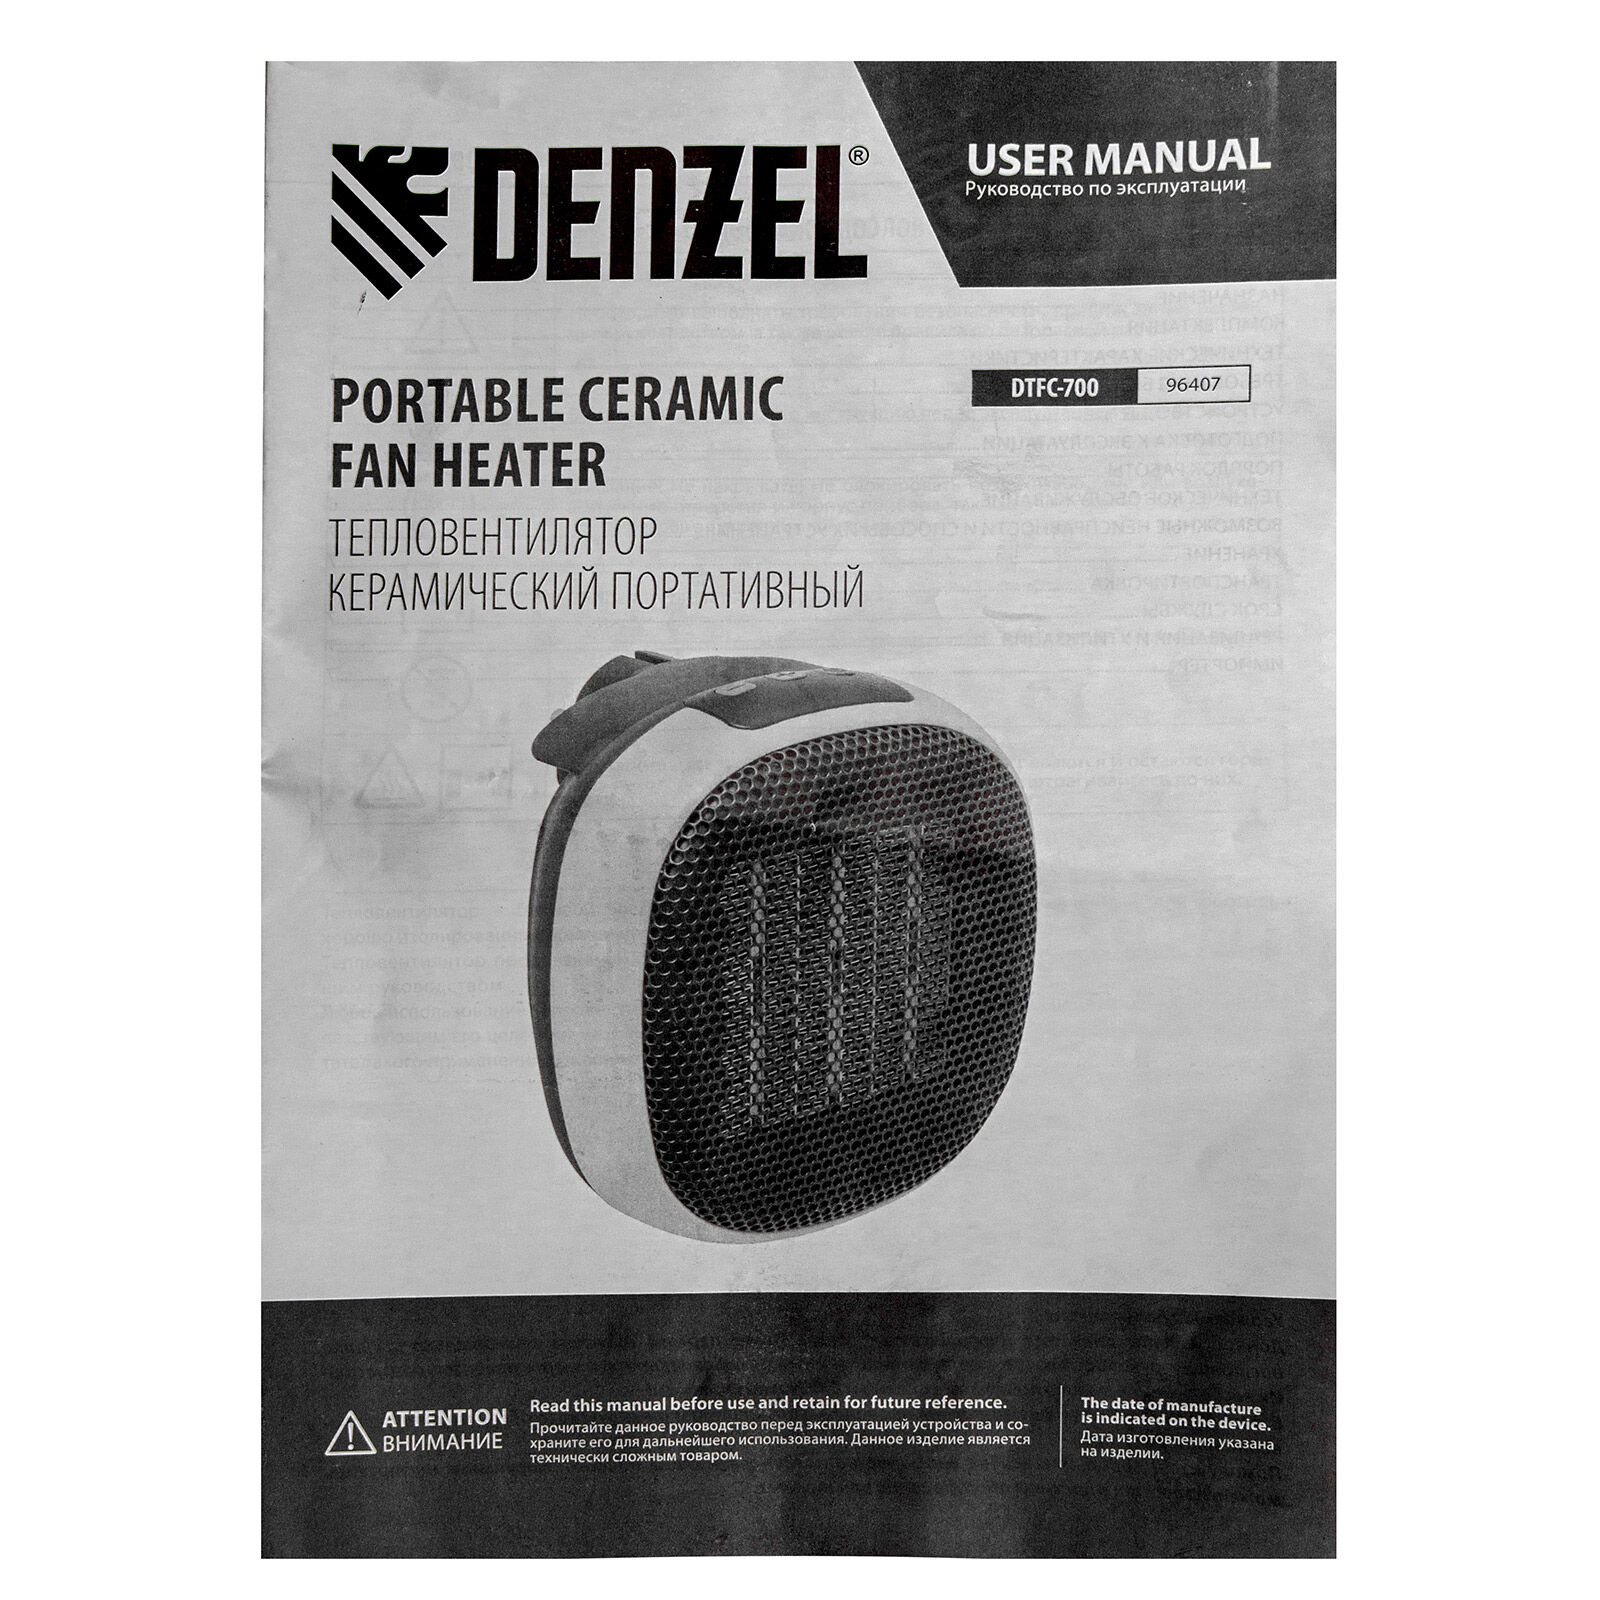 Тепловентилятор портативный керамический DTFC-700, 3 реж. вентилятор, нагрев 700 Вт // Denzel 14